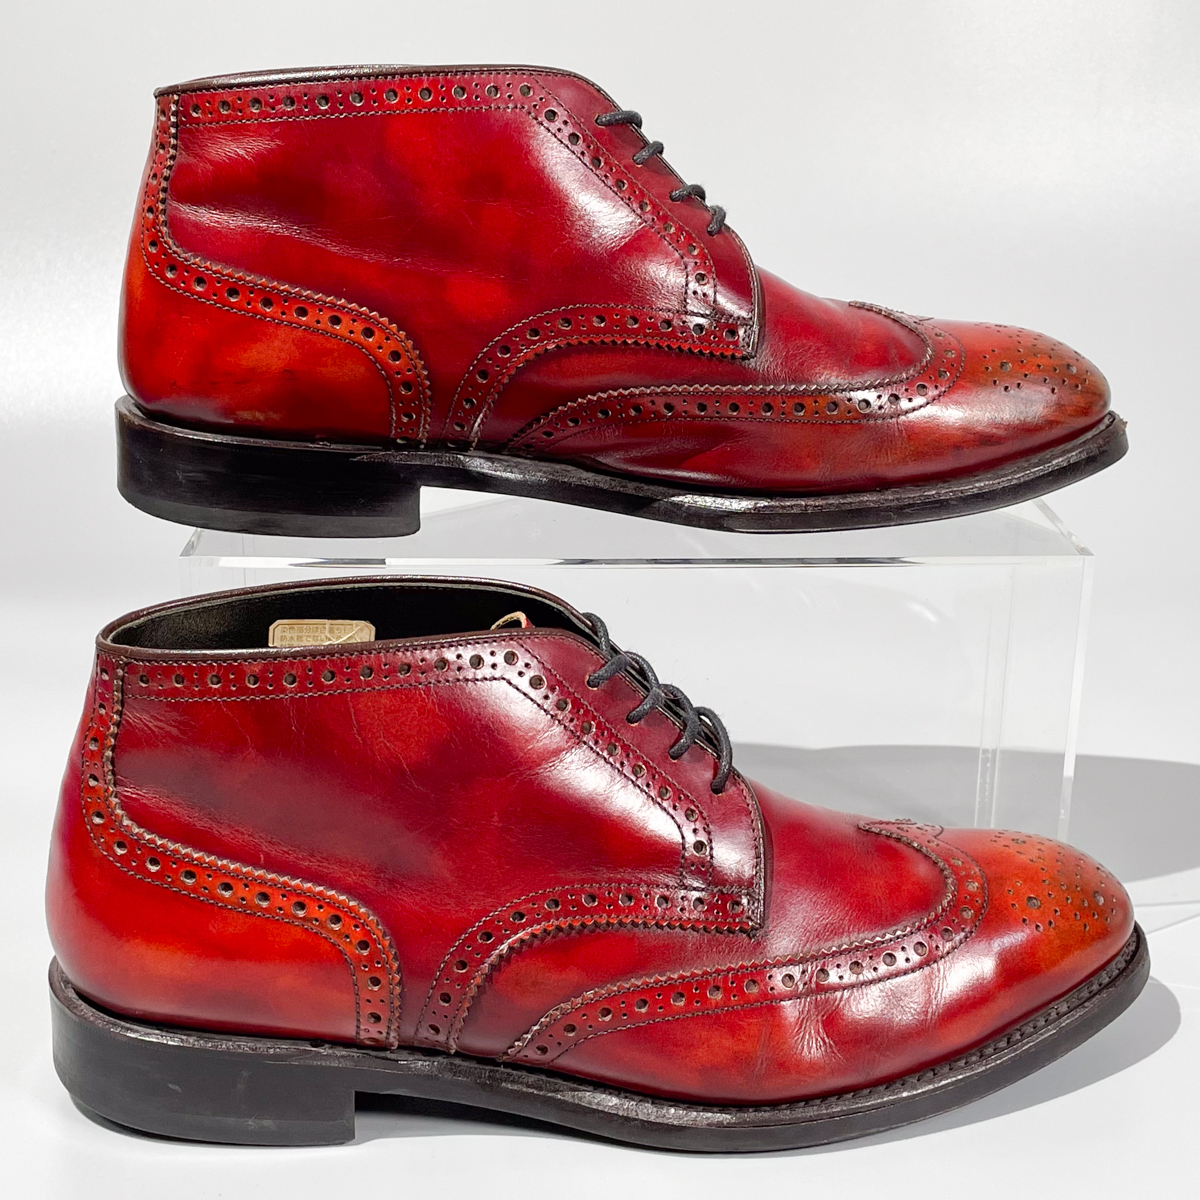 即決 REGAL リーガル ショートブーツ ウイングチップ ハイカット バーガンディ 赤茶色 メンズ 本革 革靴 25.5cm ビジネスシューズ A1892_画像5